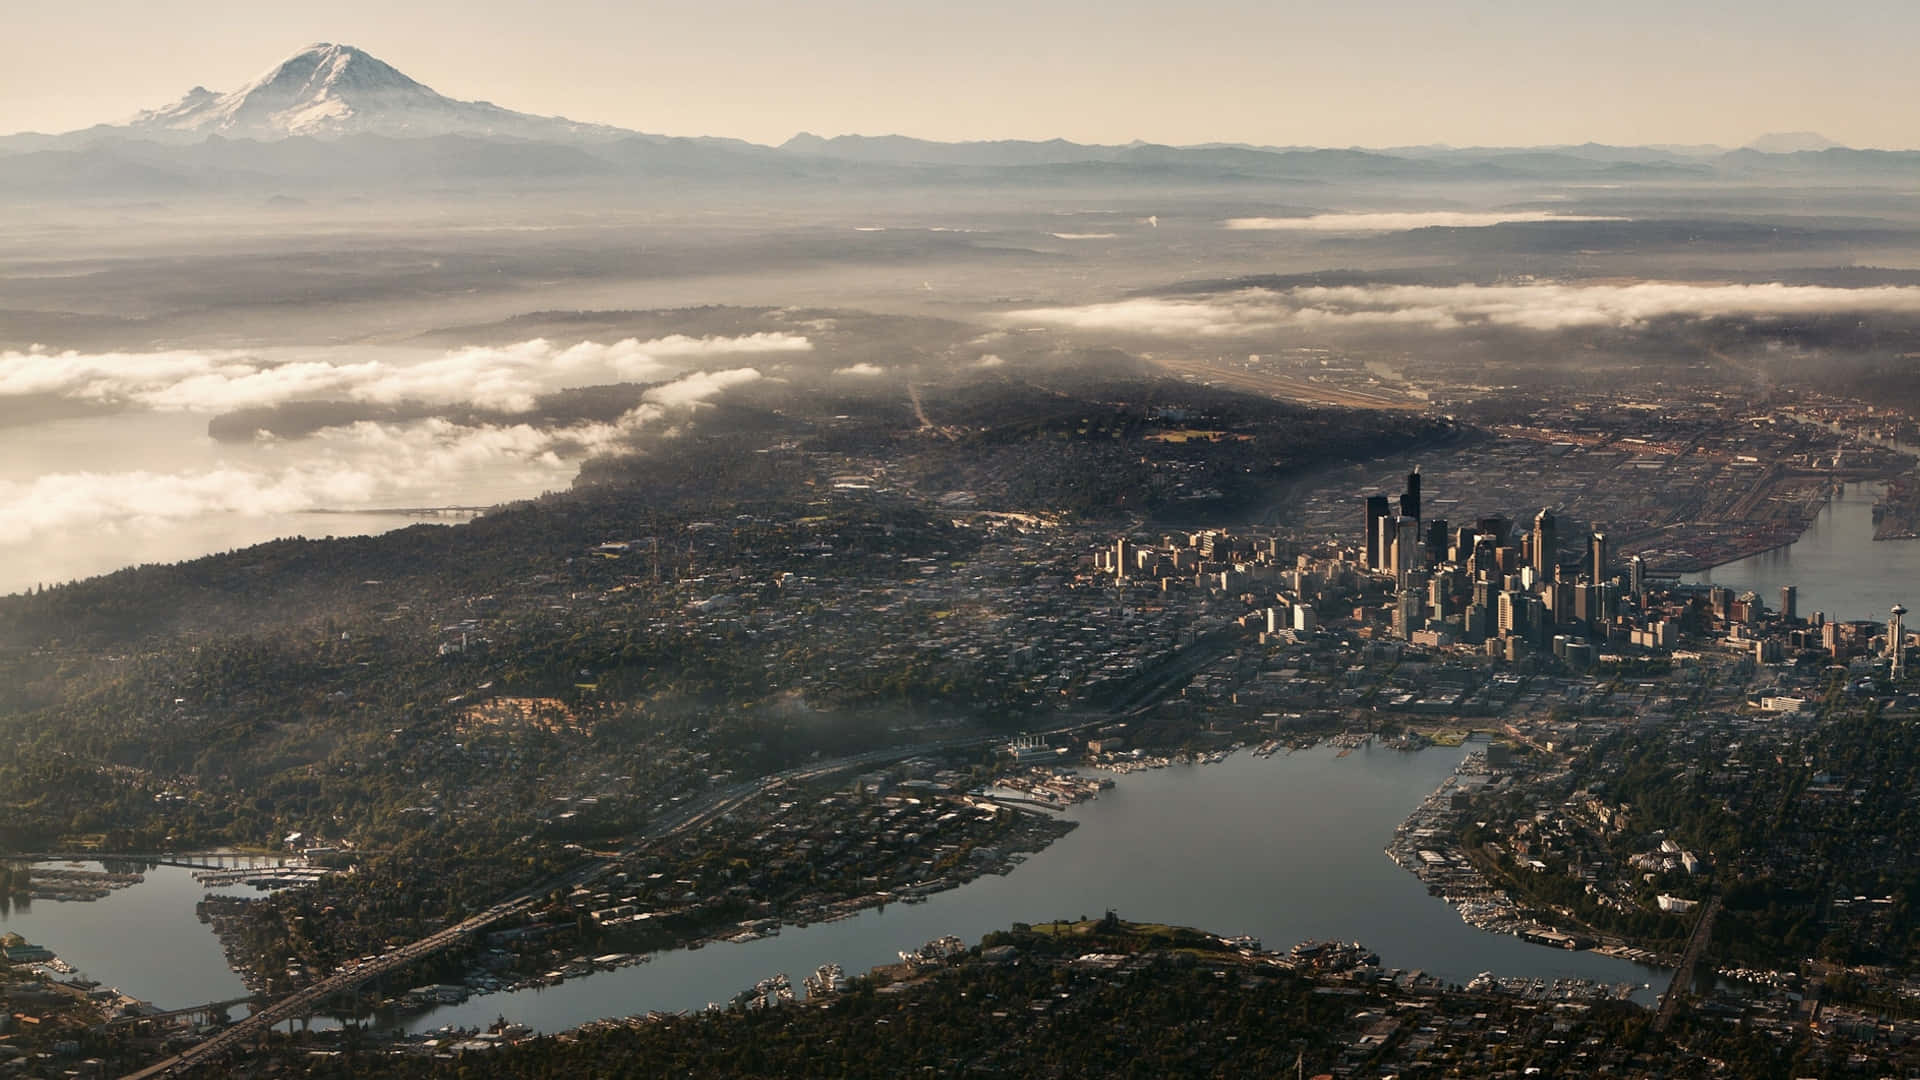 Flygfotografifrån Ovan - Bästa Bakgrundsbilden För Seattle.